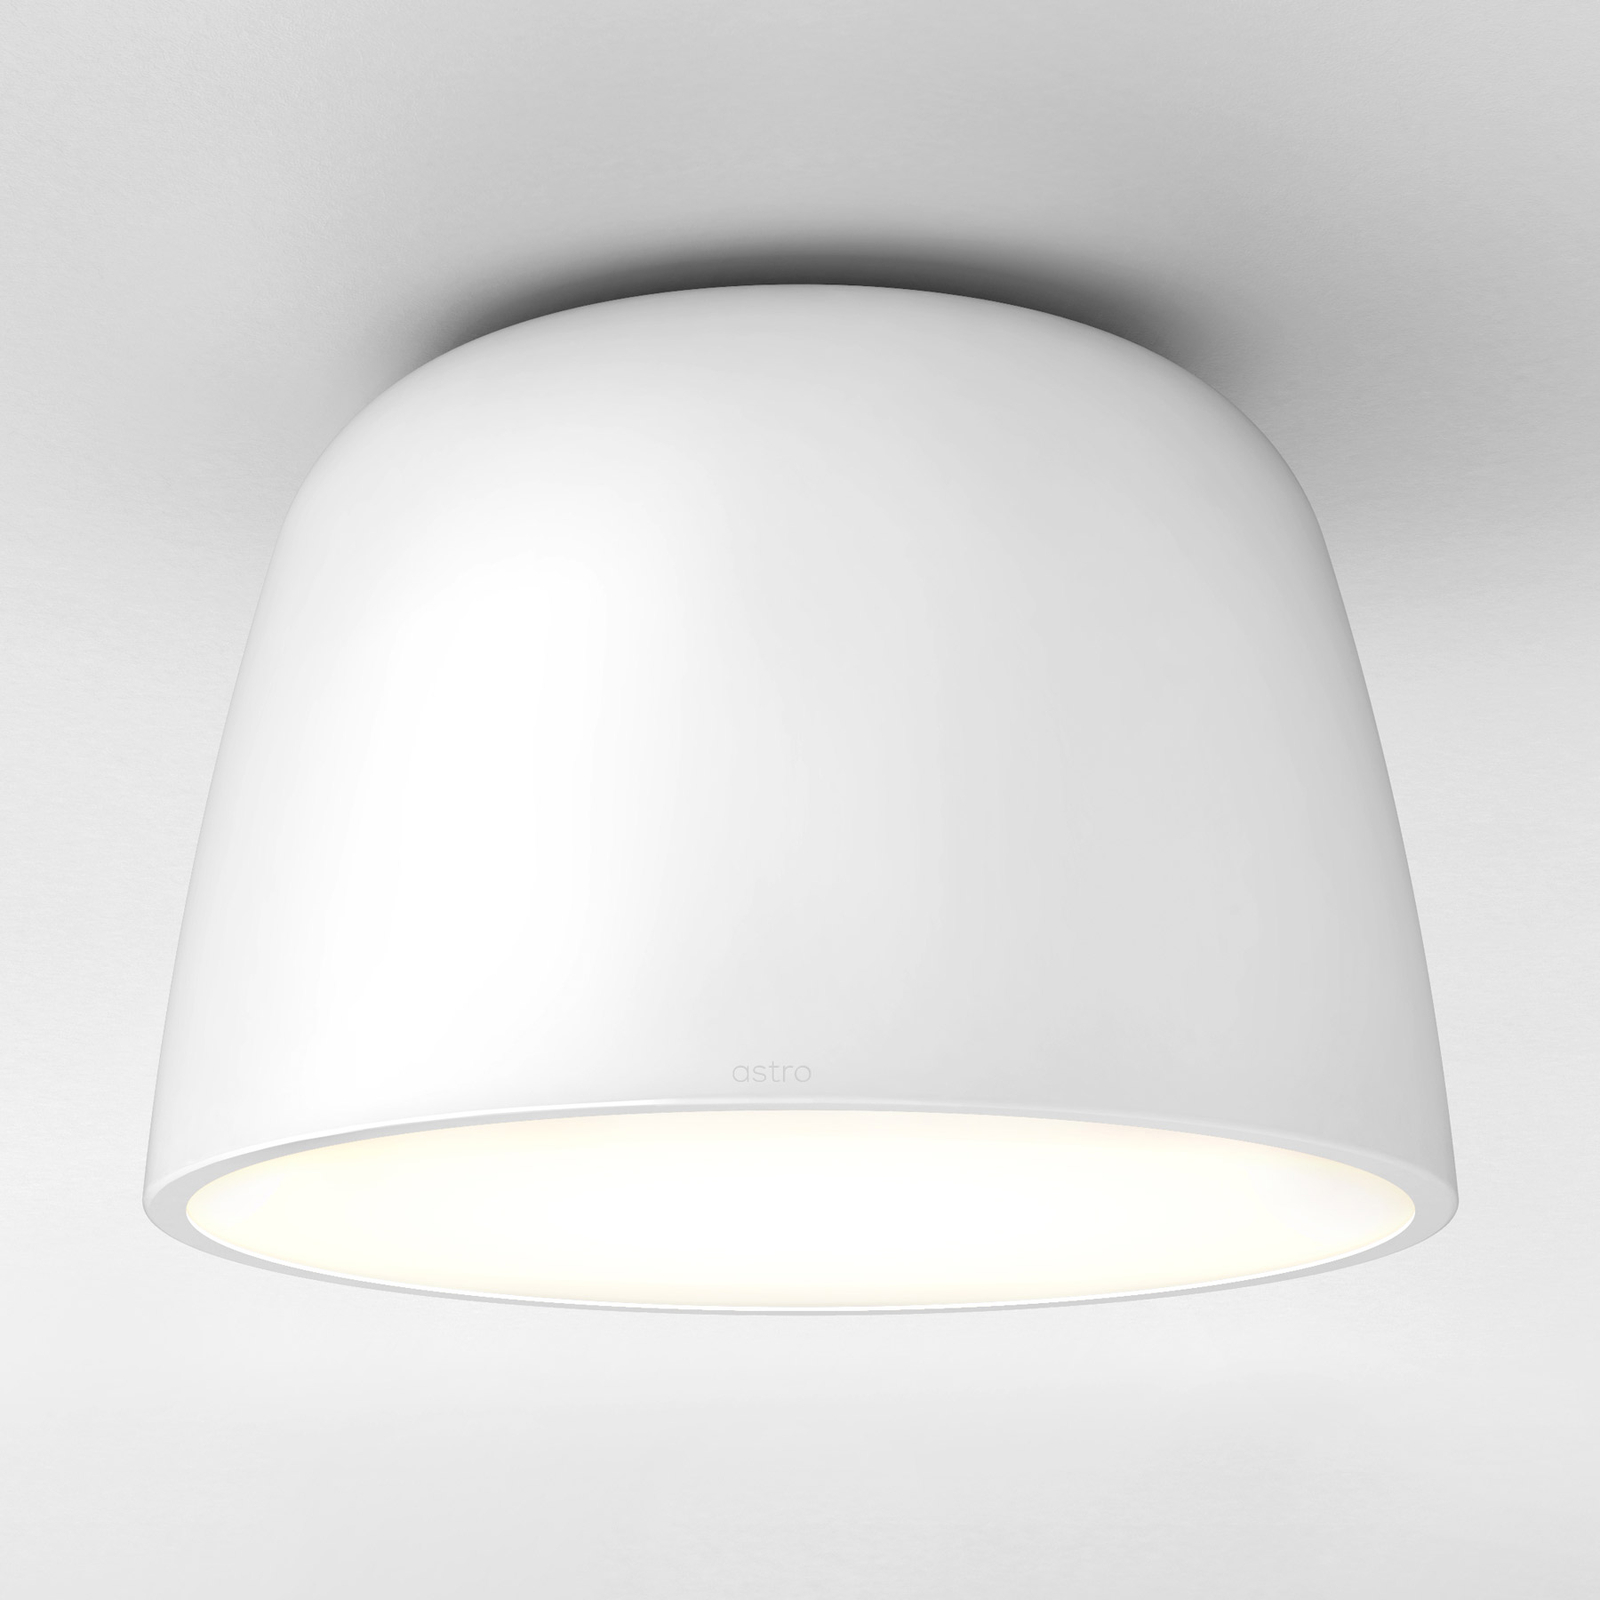 Astro Taiko loftlampe, rund, Ø 30 cm, hvid